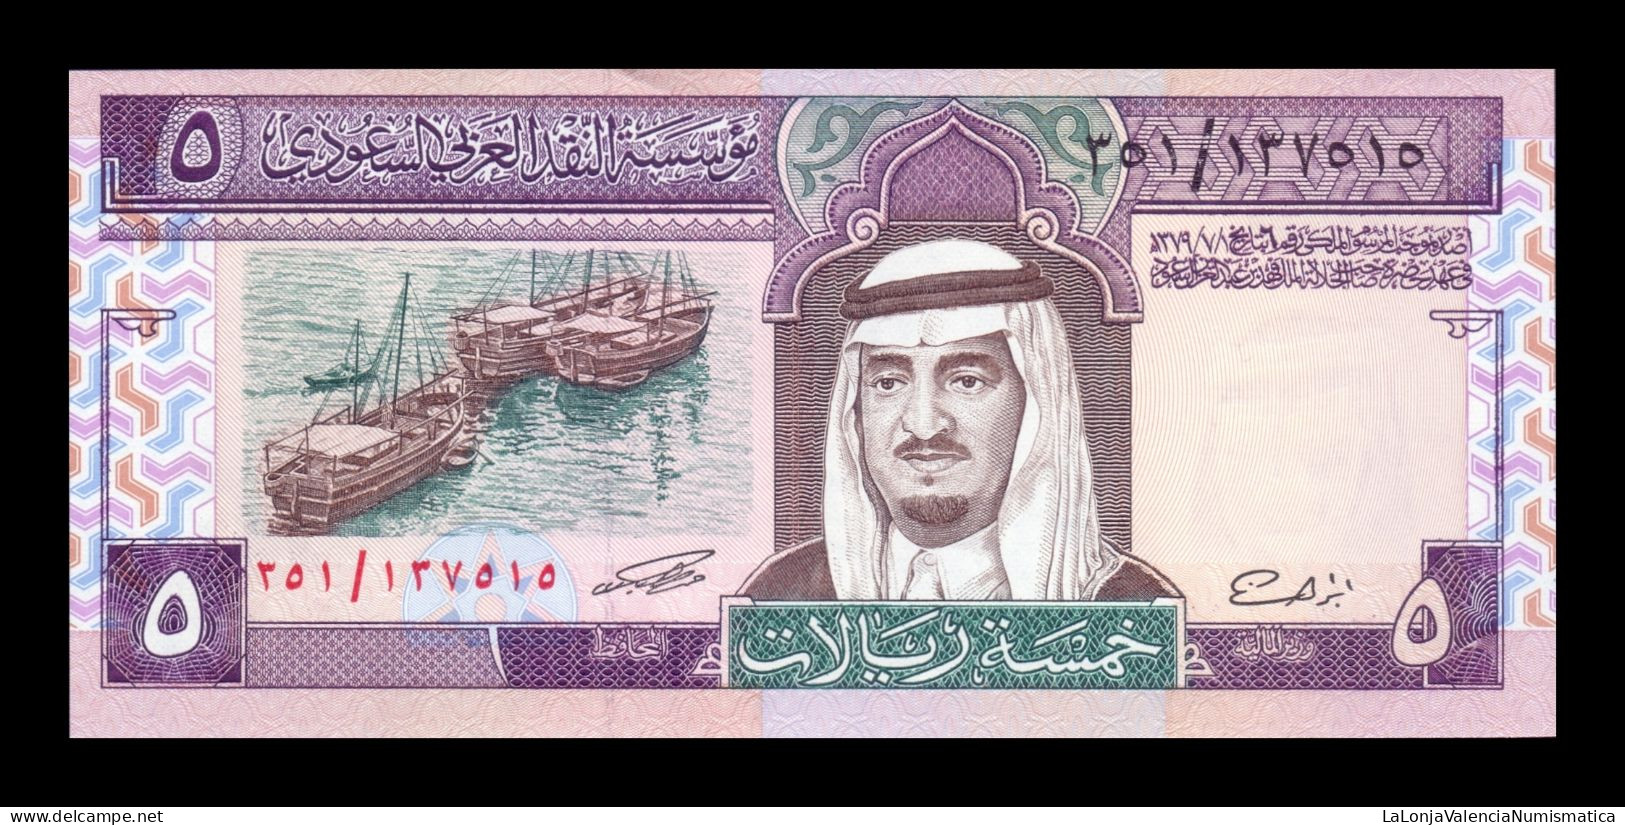 Arabia Saudí 5 Riyals 1983 Pick 22d Sc Unc - Arabia Saudita